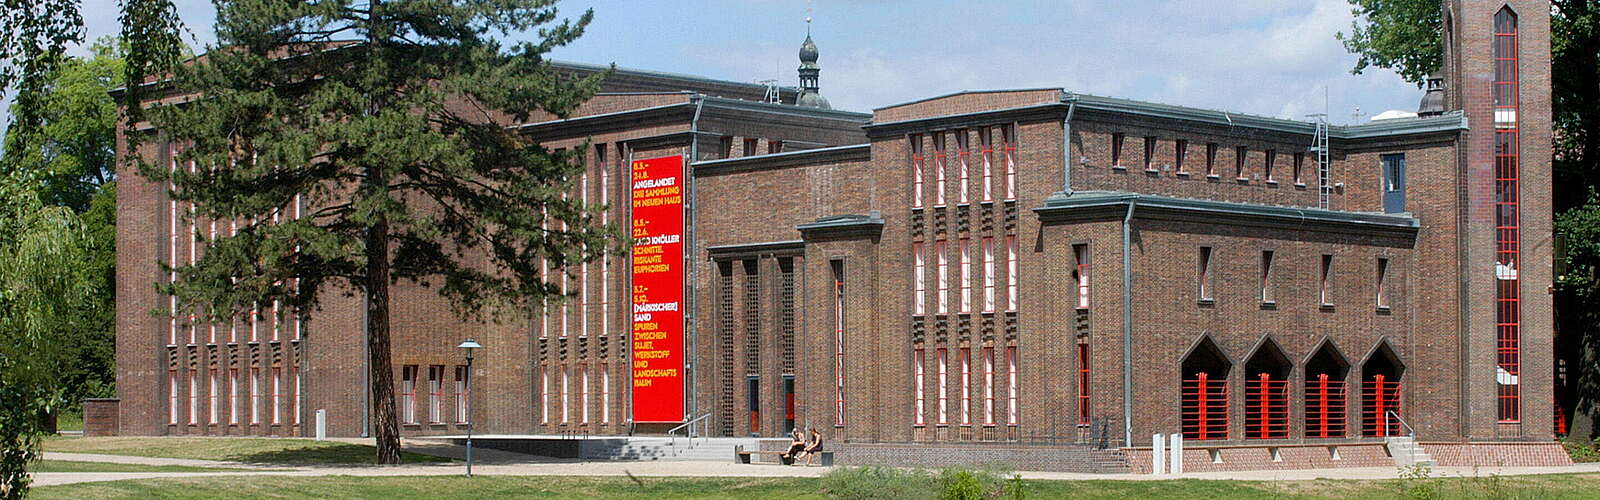 Brandenburgisches Landesmuseum für Moderne Kunst - Dieselkraftwerk Cottbus,
        
    

        
        
            Foto: Marlies Kross